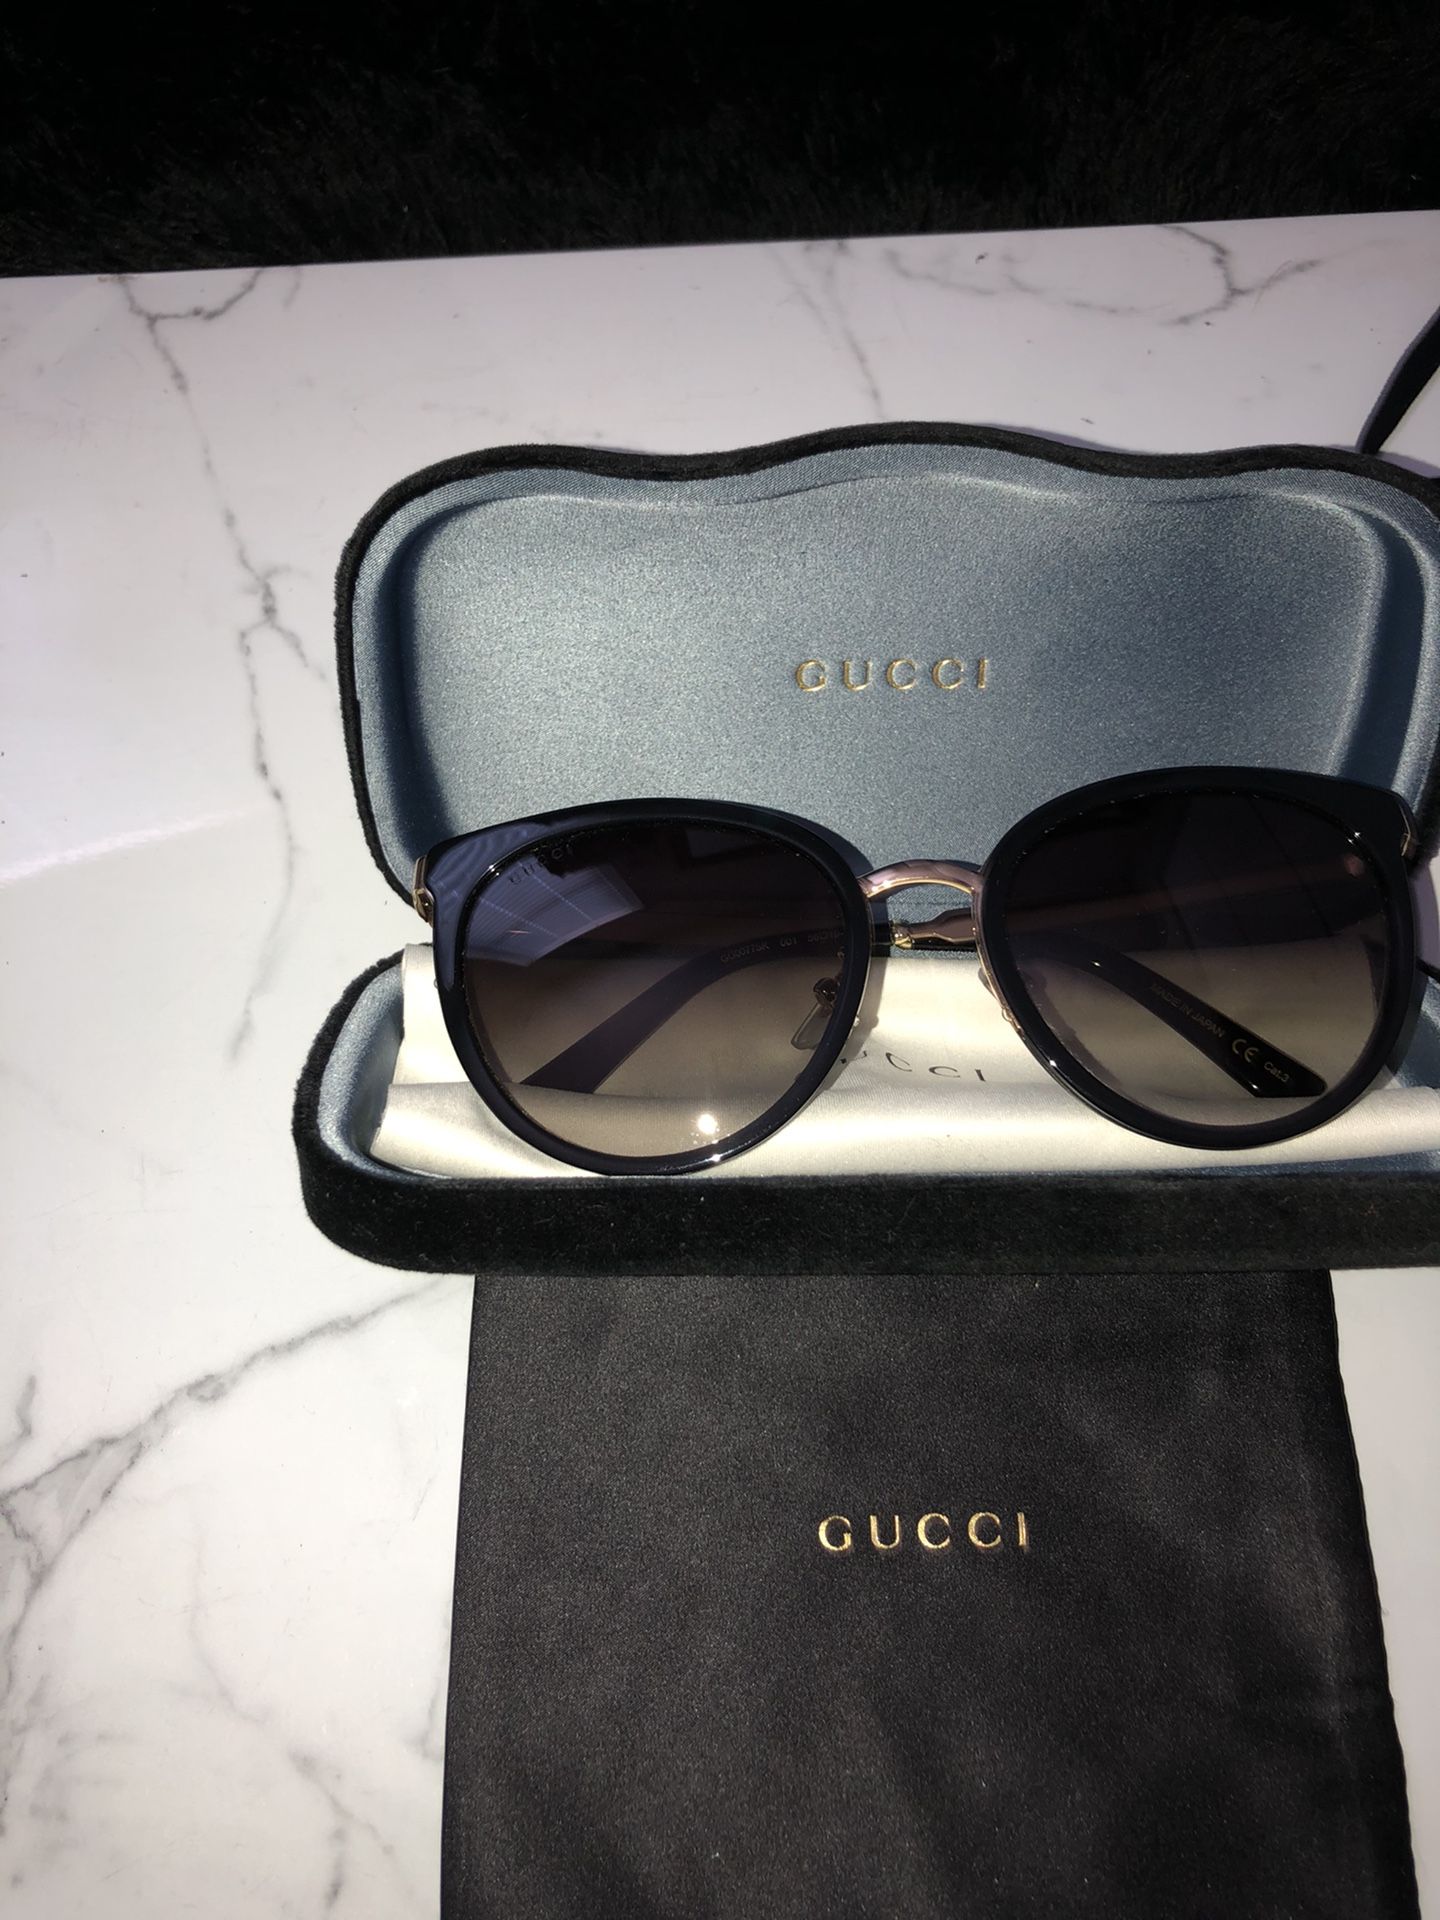 Gucci Sunglasses, w accessories shown